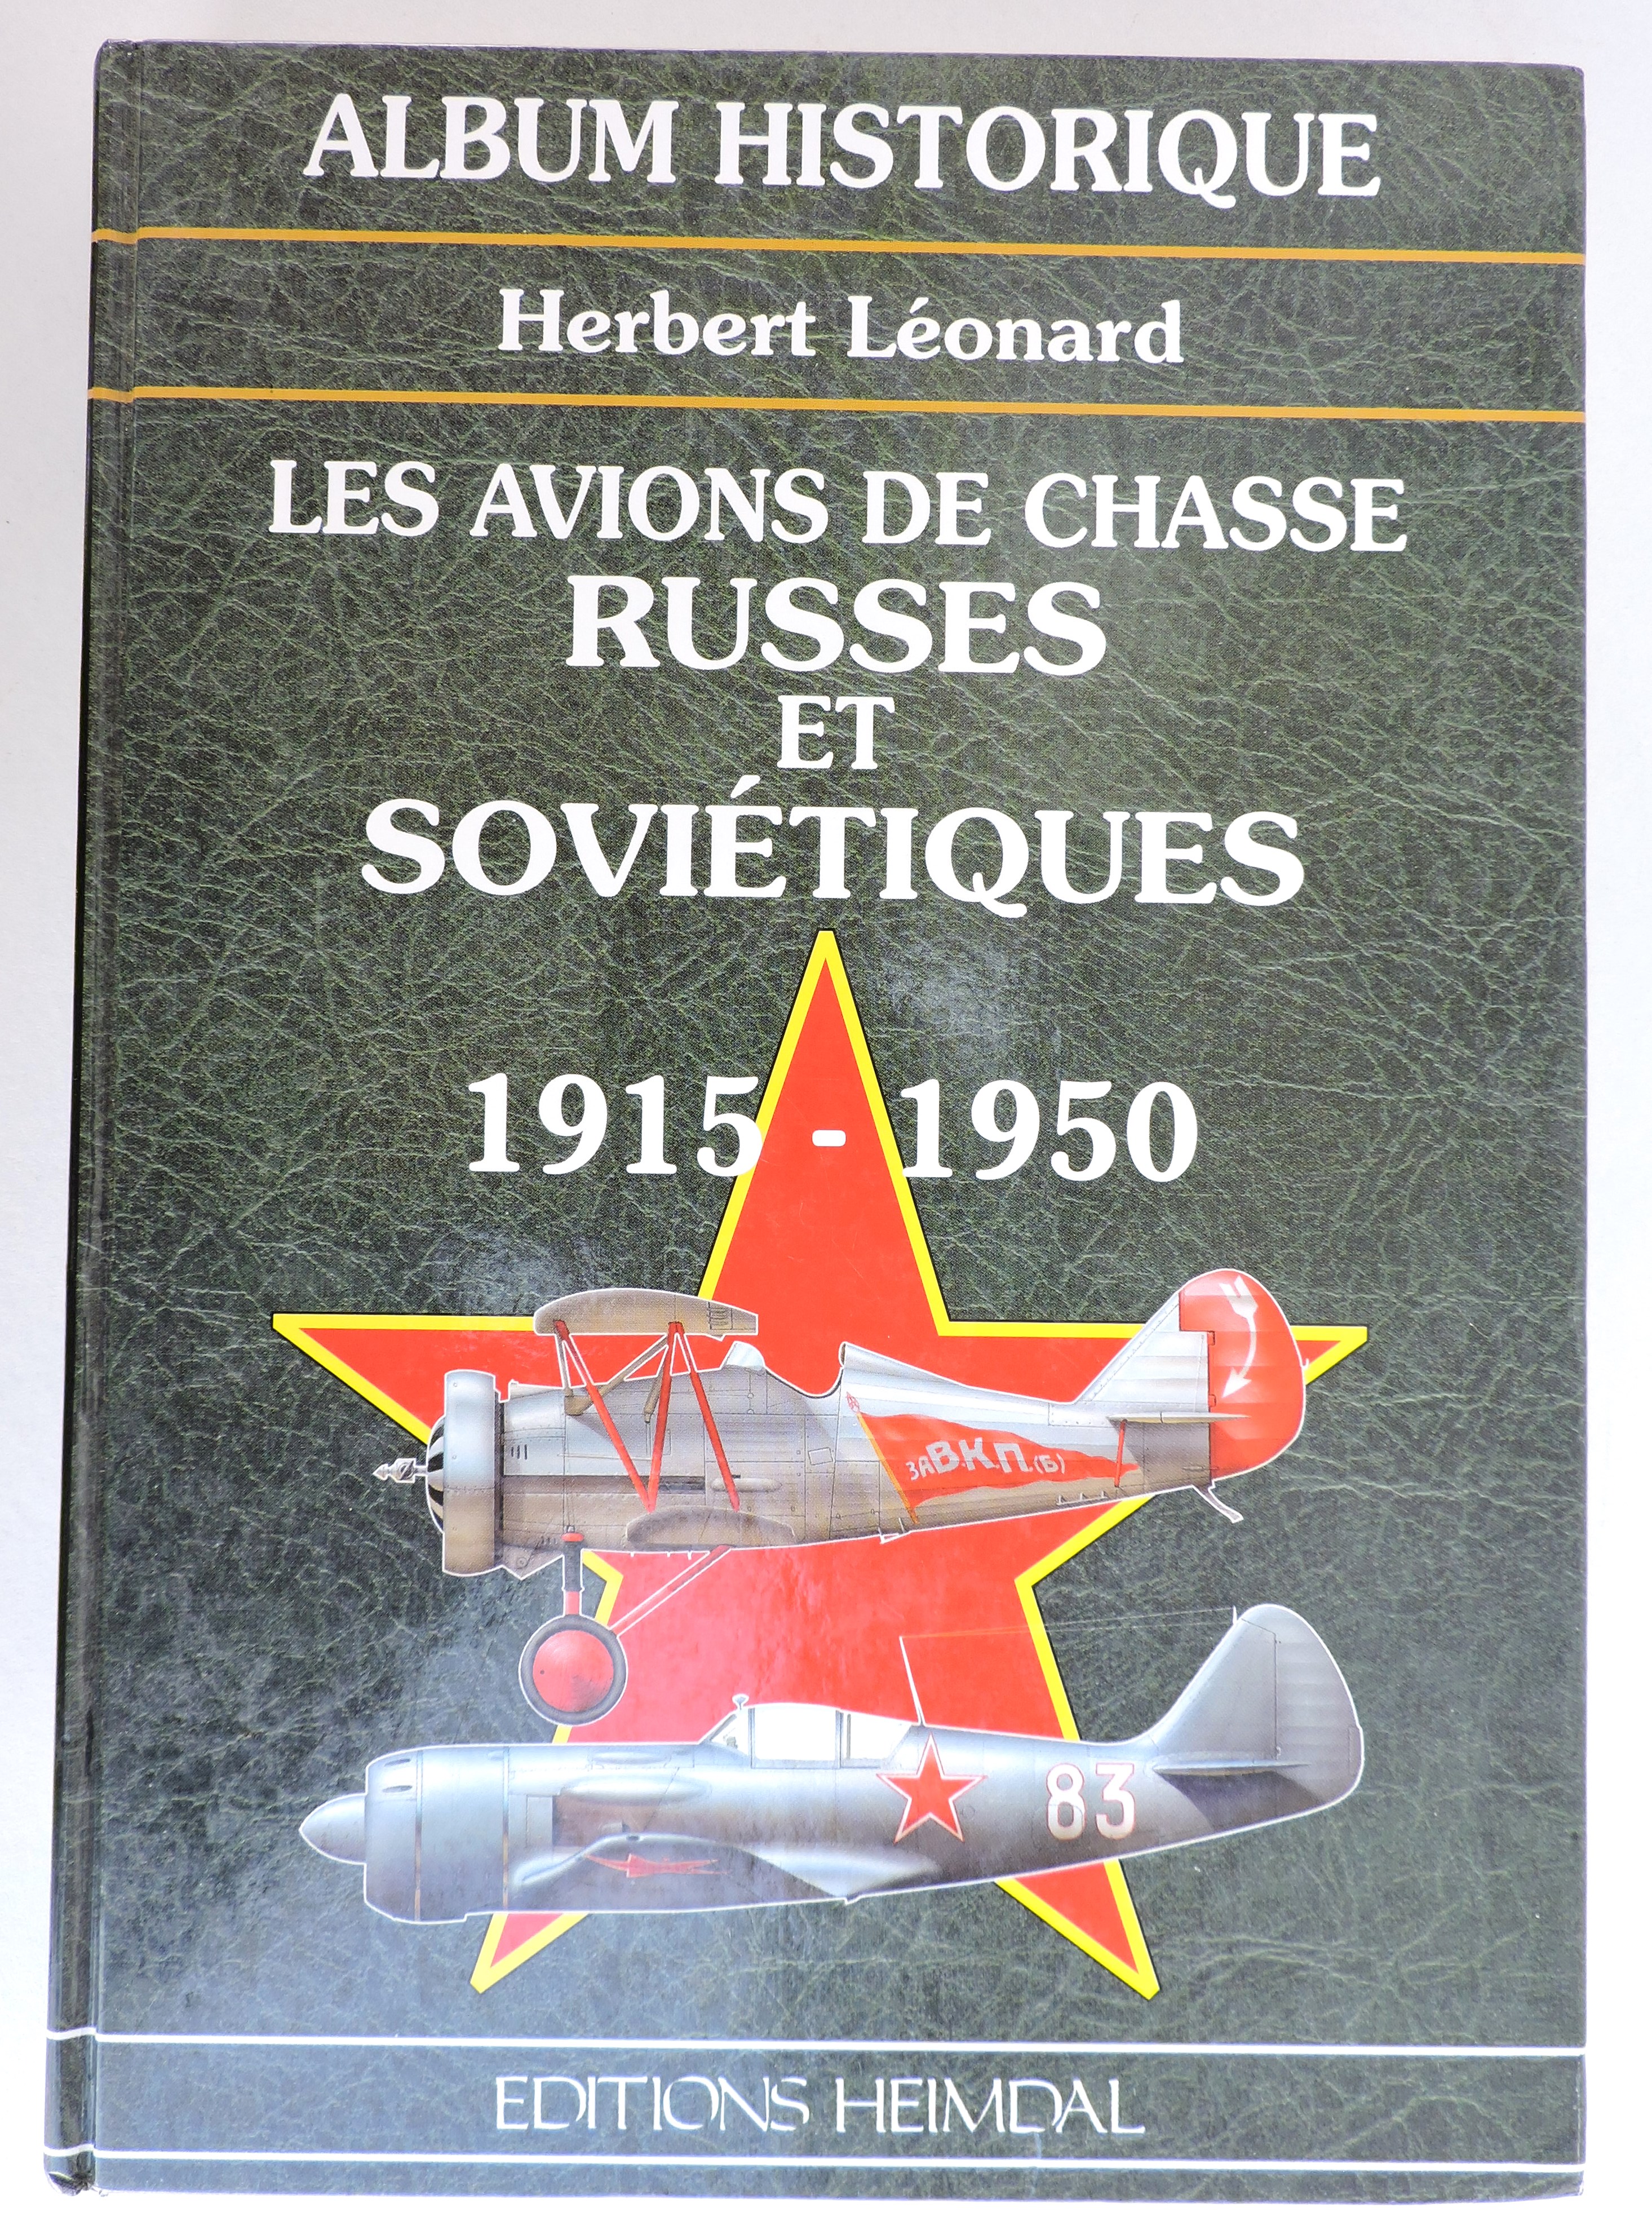 Les avions de chasse russes et soviétiques 1915-1950 H. Leonard Heimdal 1995